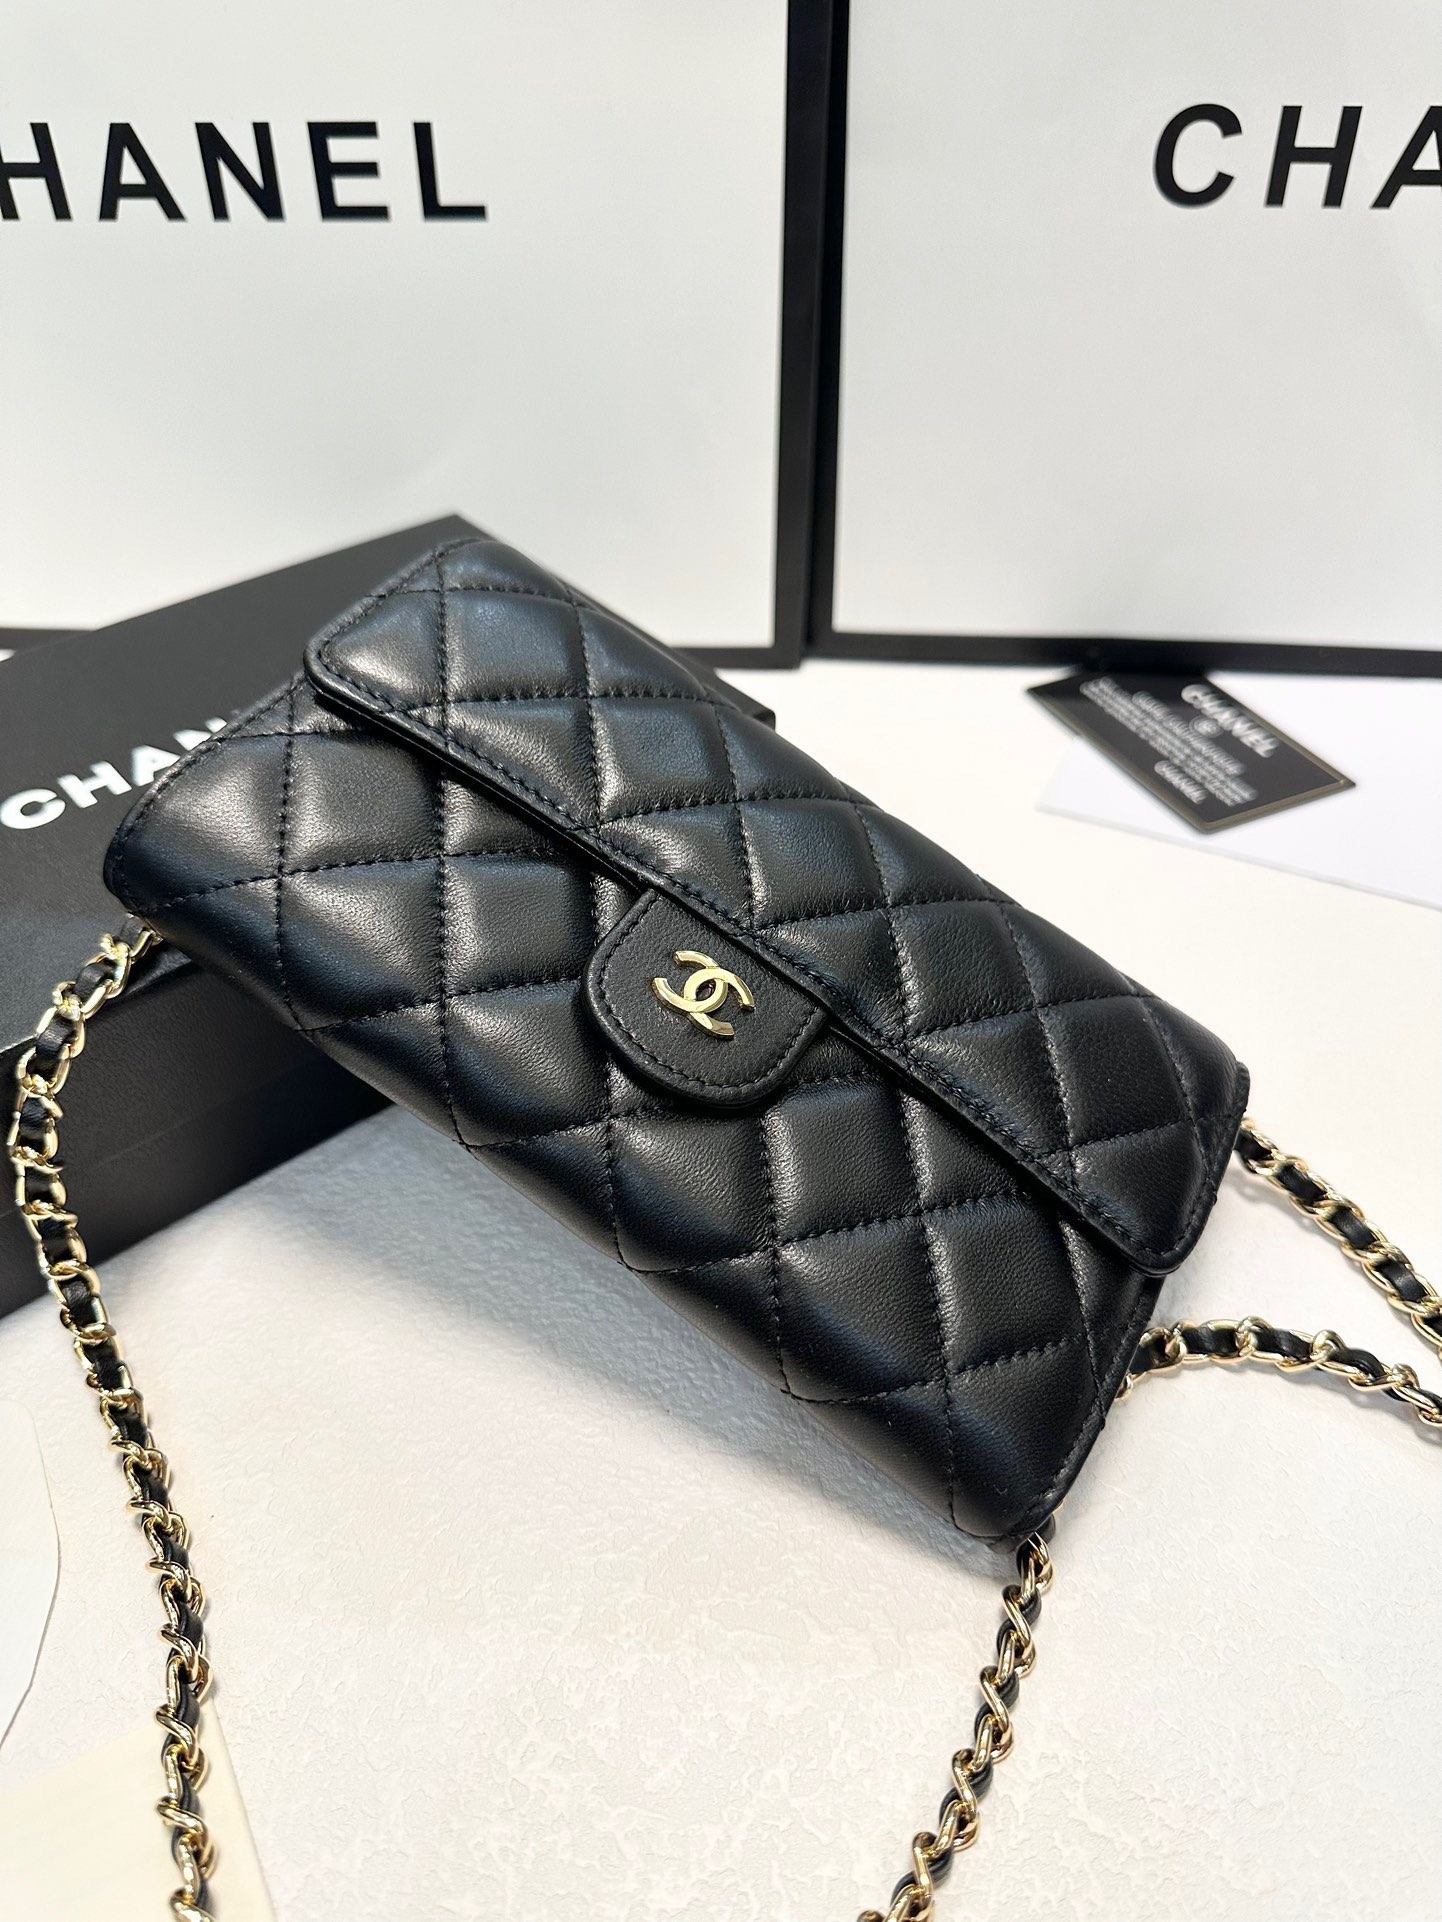 cc new arrival bag wallet size : 19x10 cm